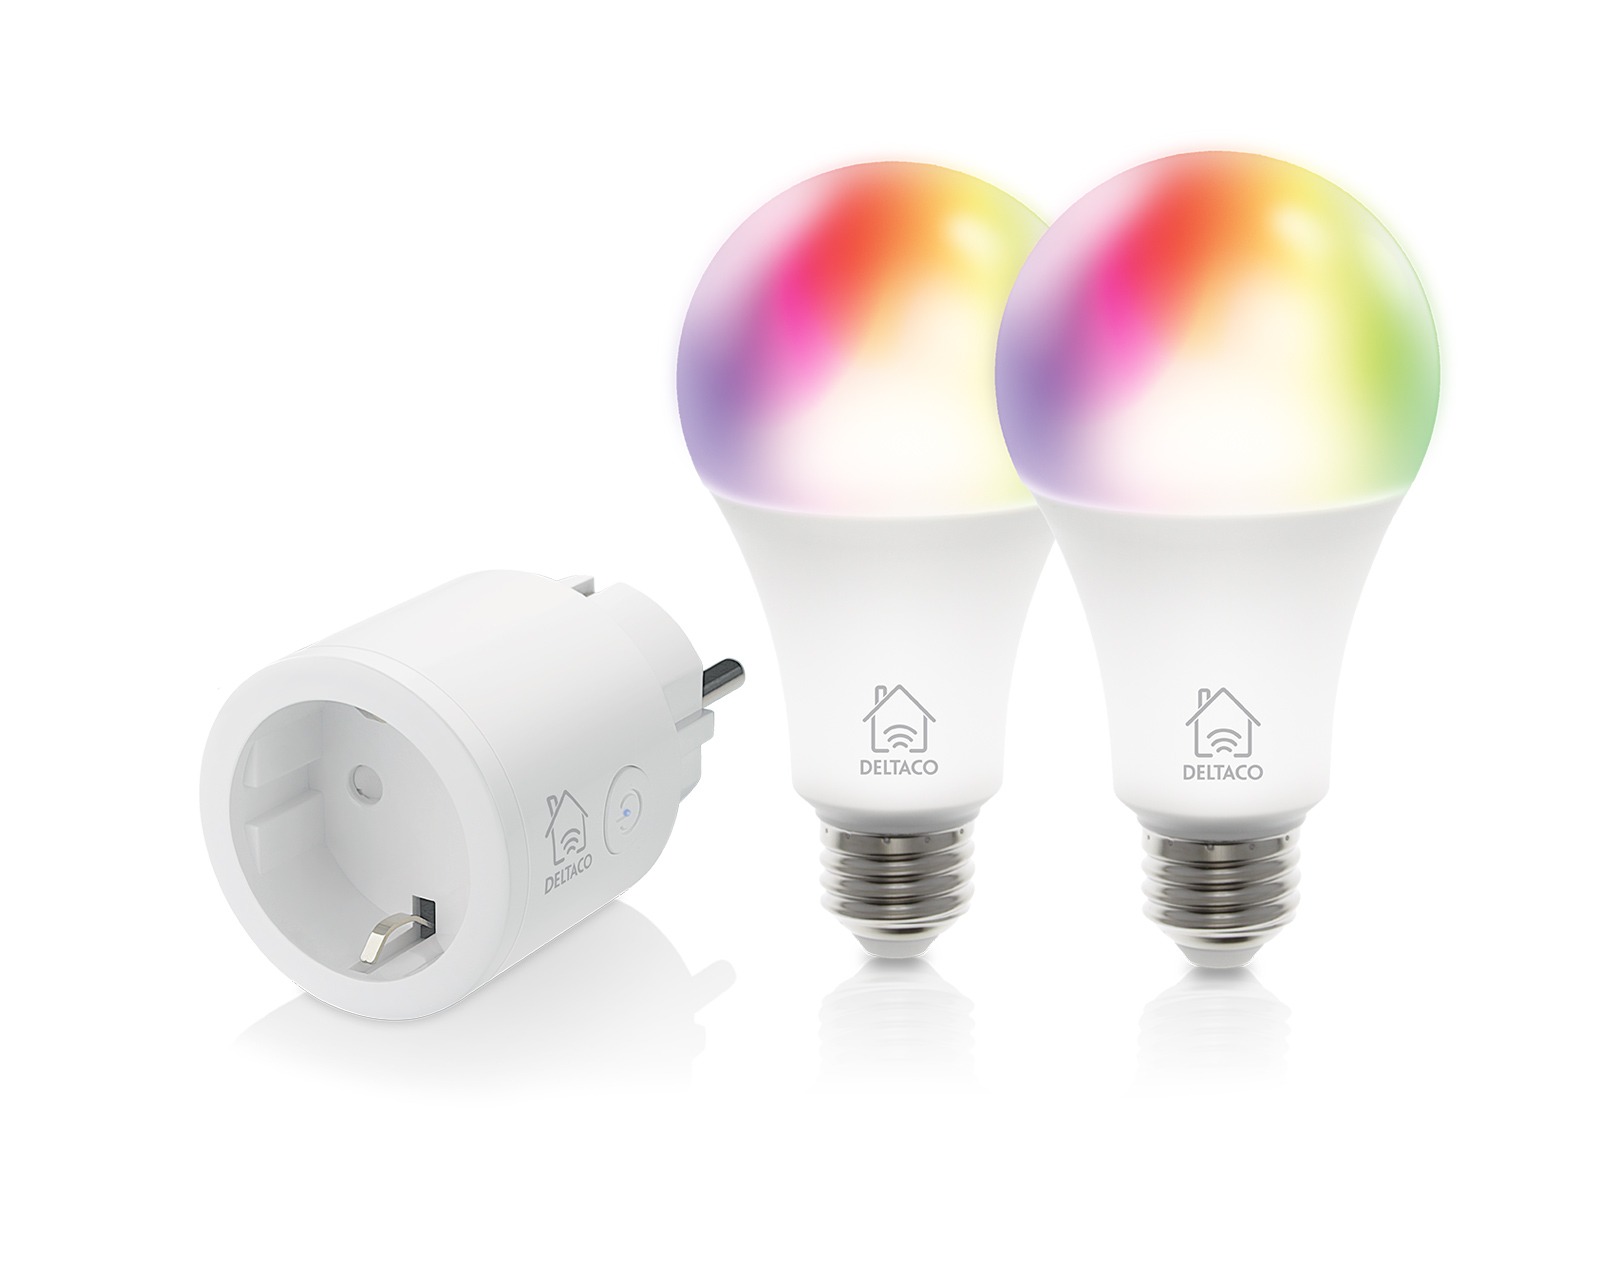 Overskæg vedholdende Vægt Deltaco Smart Home Starterkit, 2x RGB LED Lampe E27 + 1 Smart Plug -  MaxGaming.dk